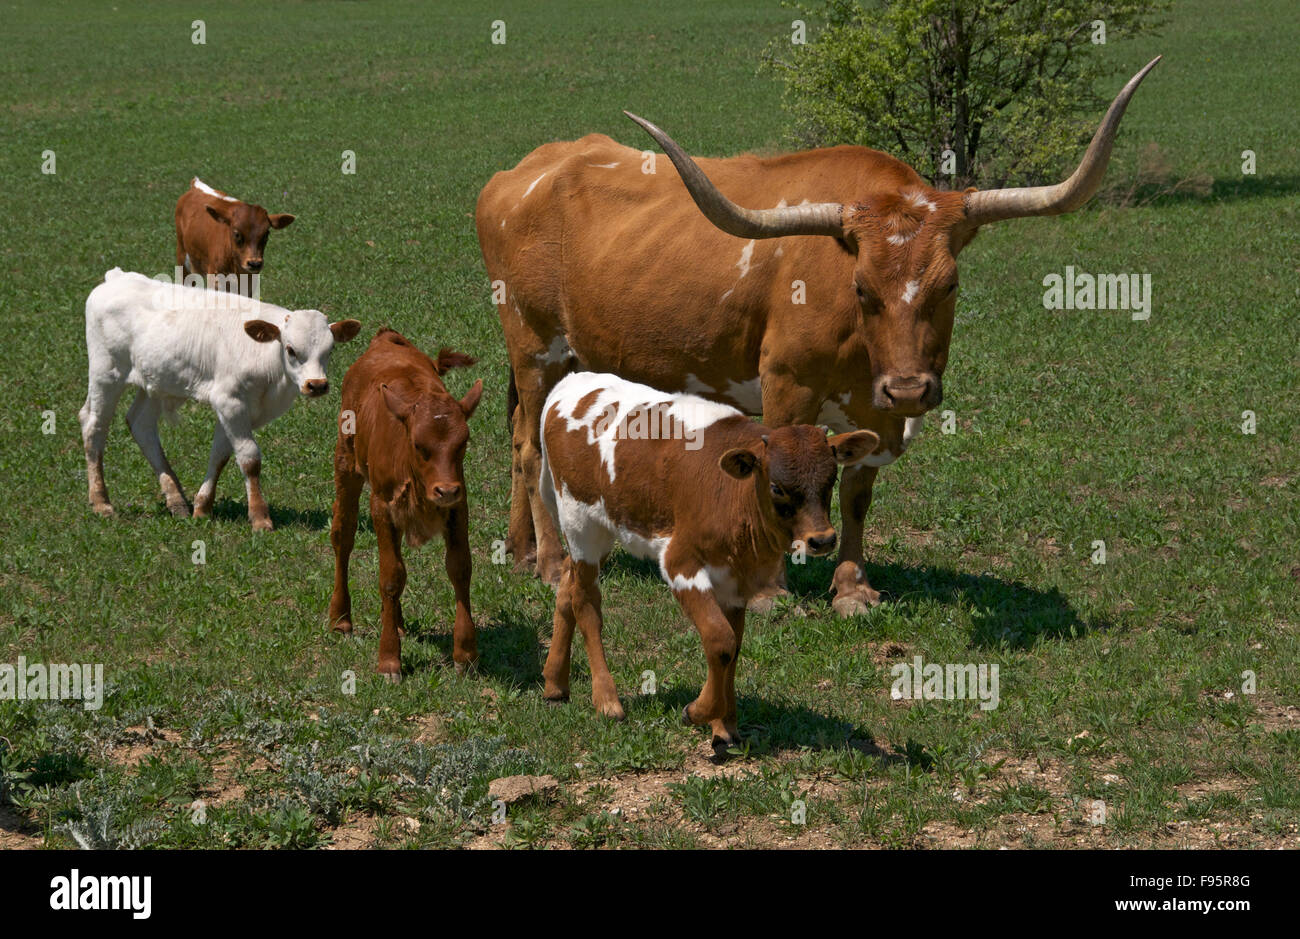 Vache Texas Longhorn avec quatre veaux marcher à ses côtés en vert pâturage. Decatur, TX, États-Unis d'Amérique Banque D'Images